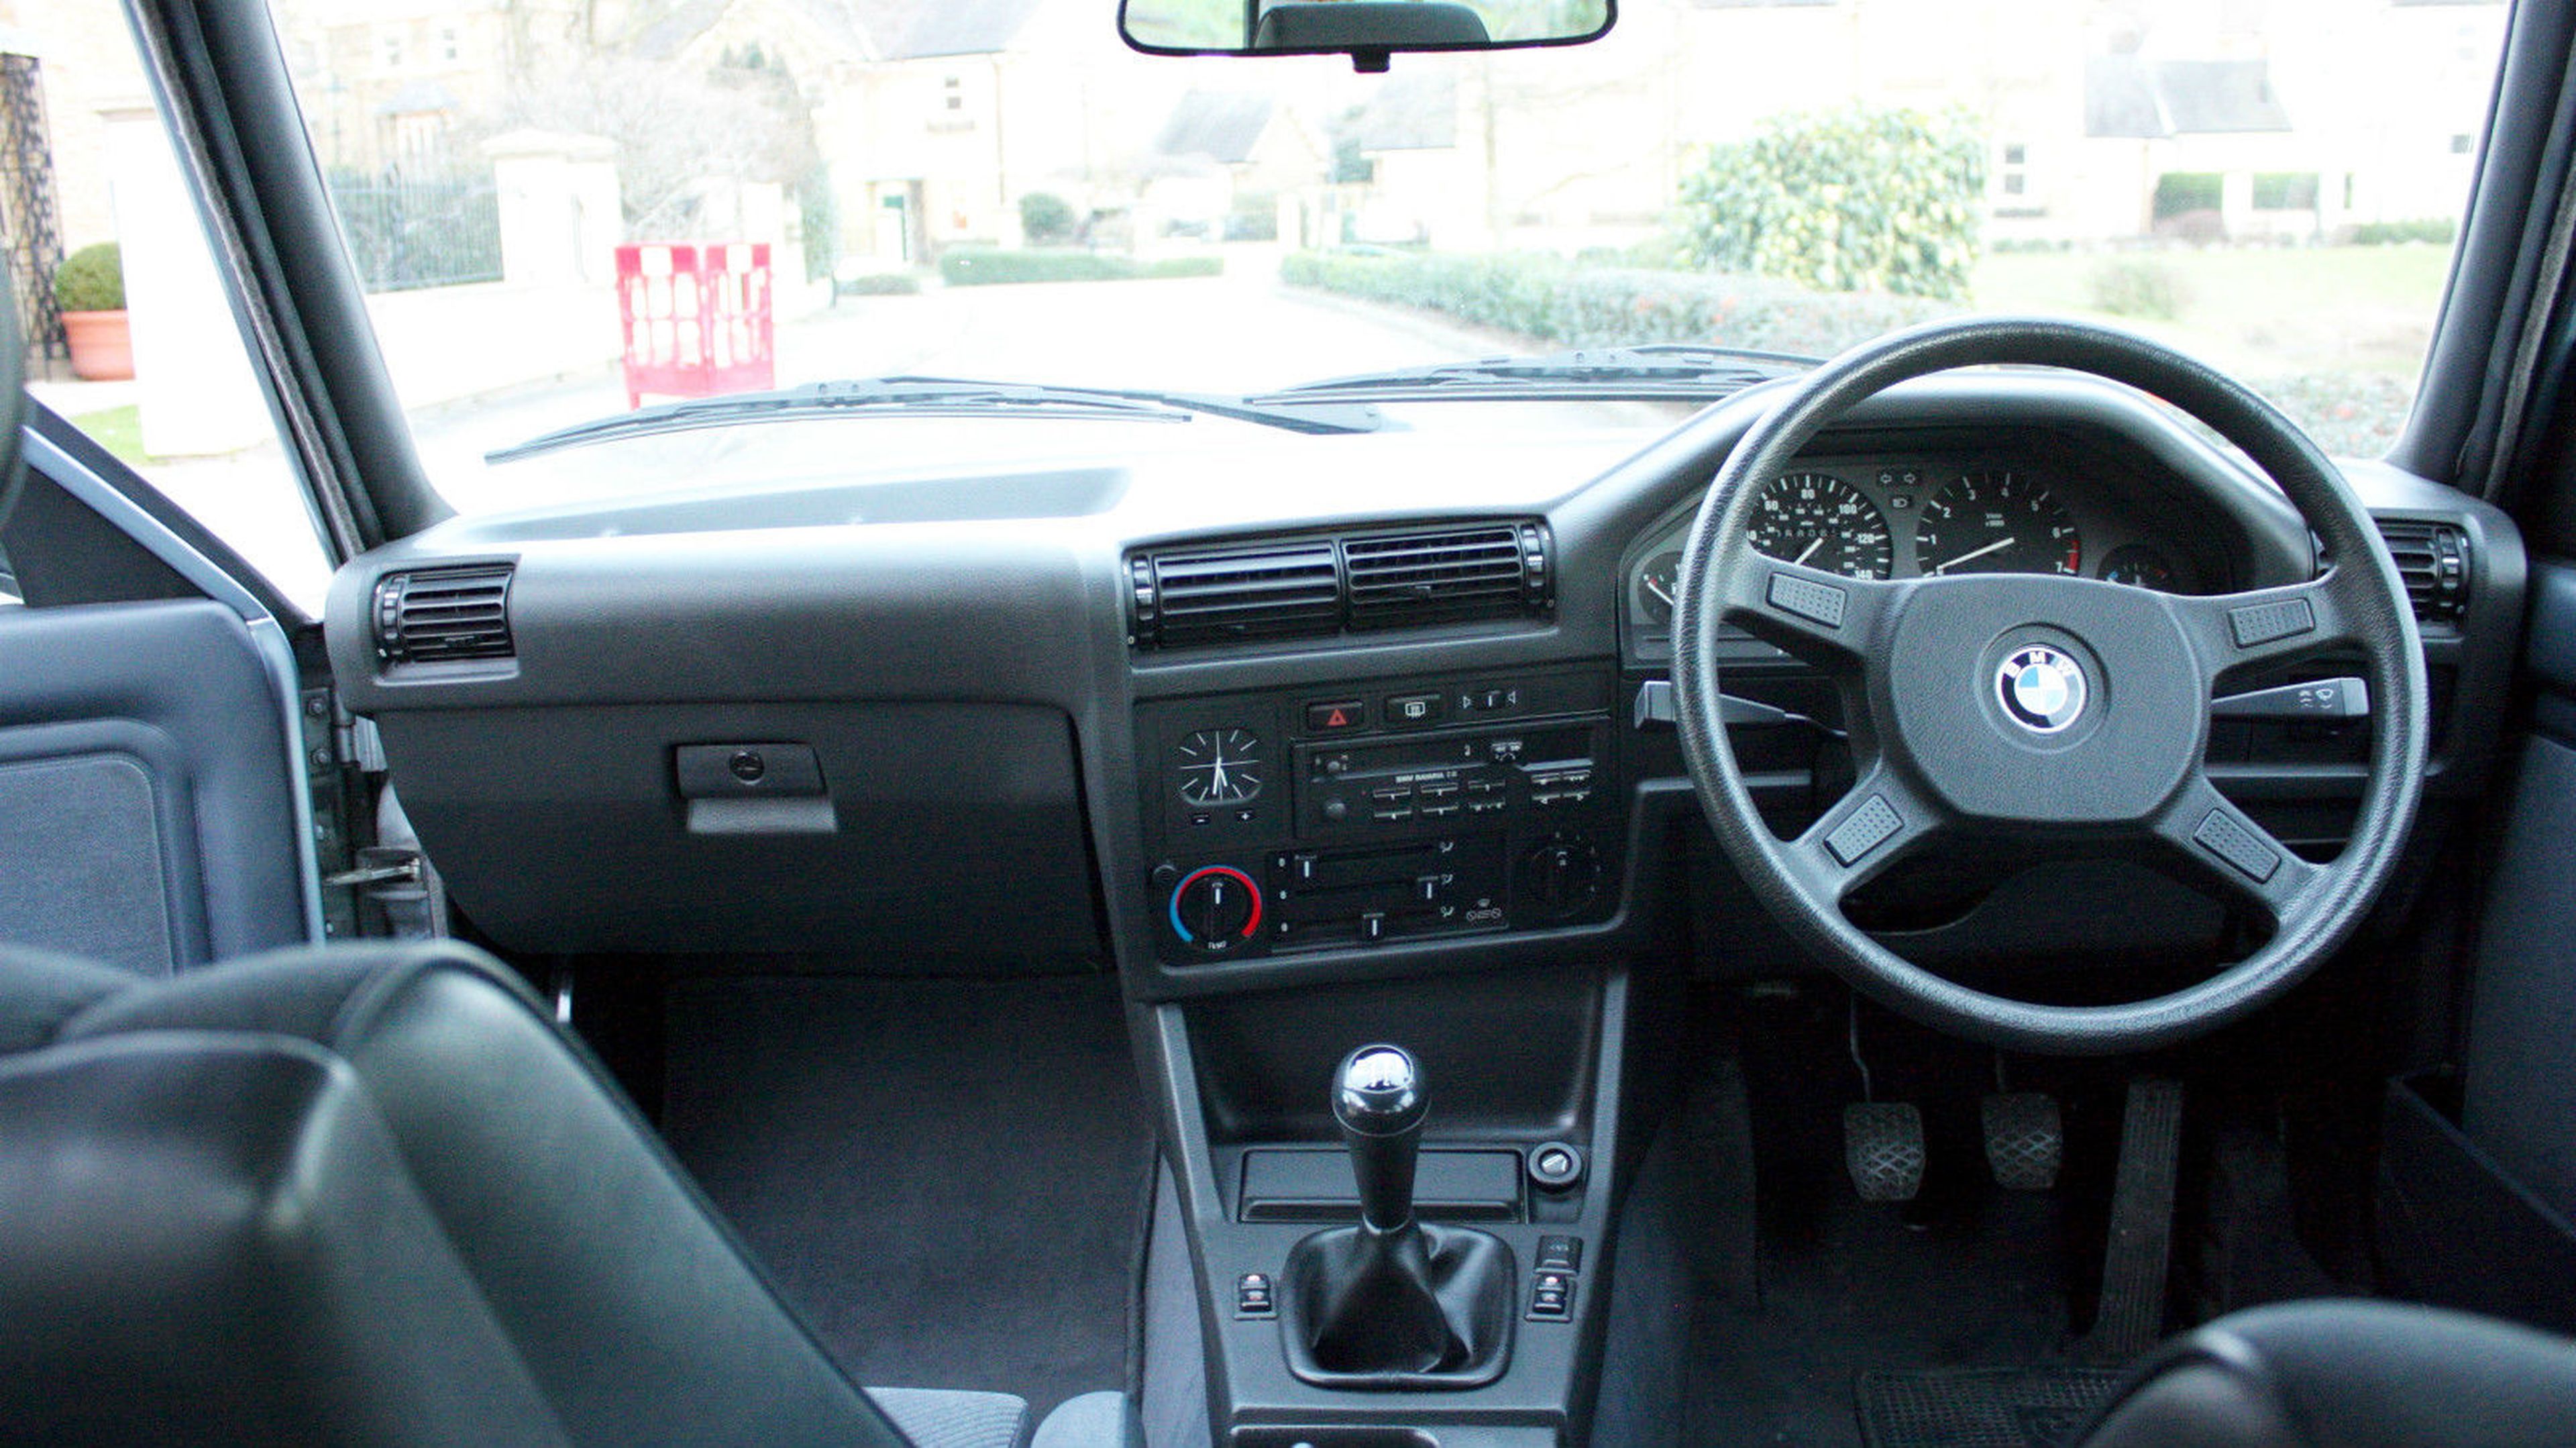 BMW E30 325i interior